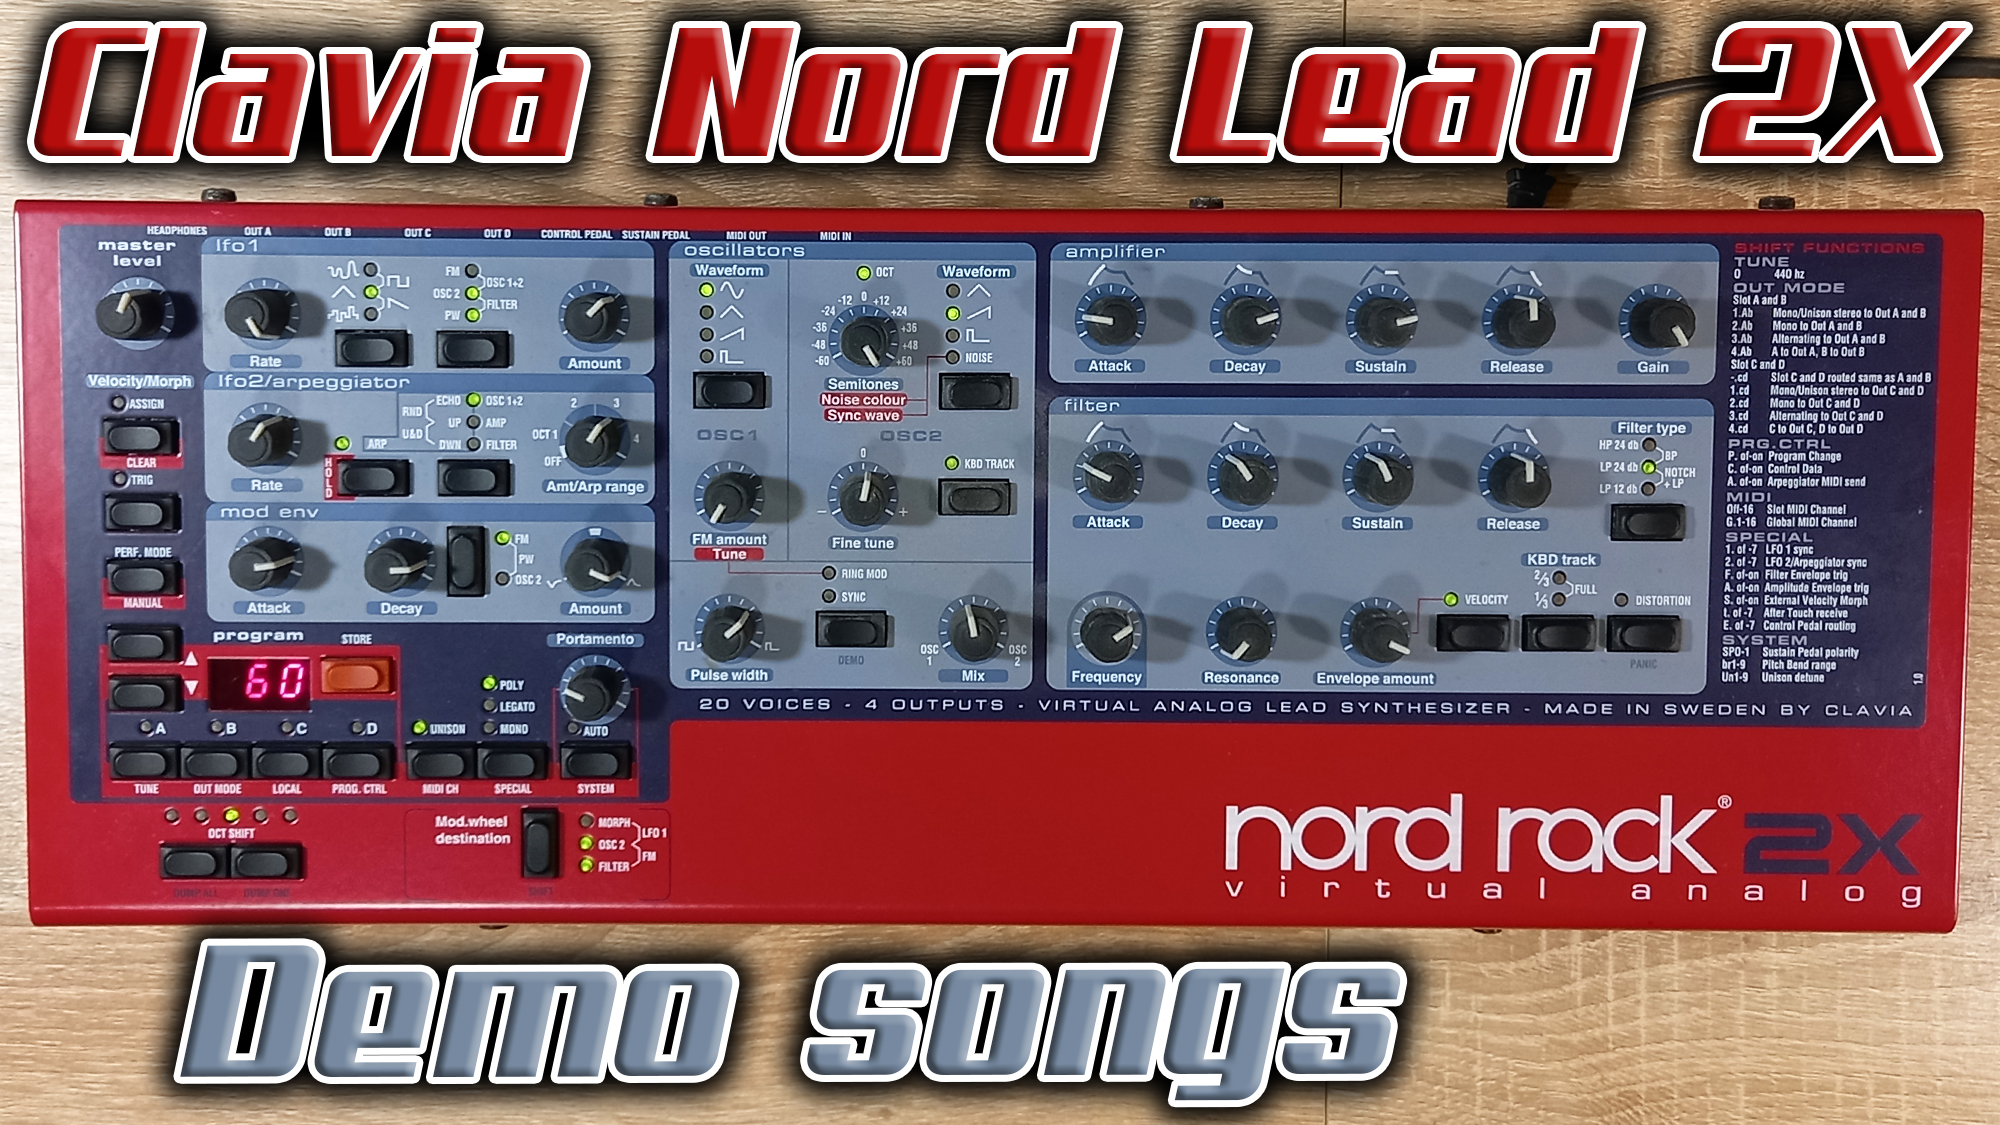 Виртуальный аналоговый синтезатор Clavia Nord Lead 2X из 2004 года. Небольшой обзор и послушаем Demo